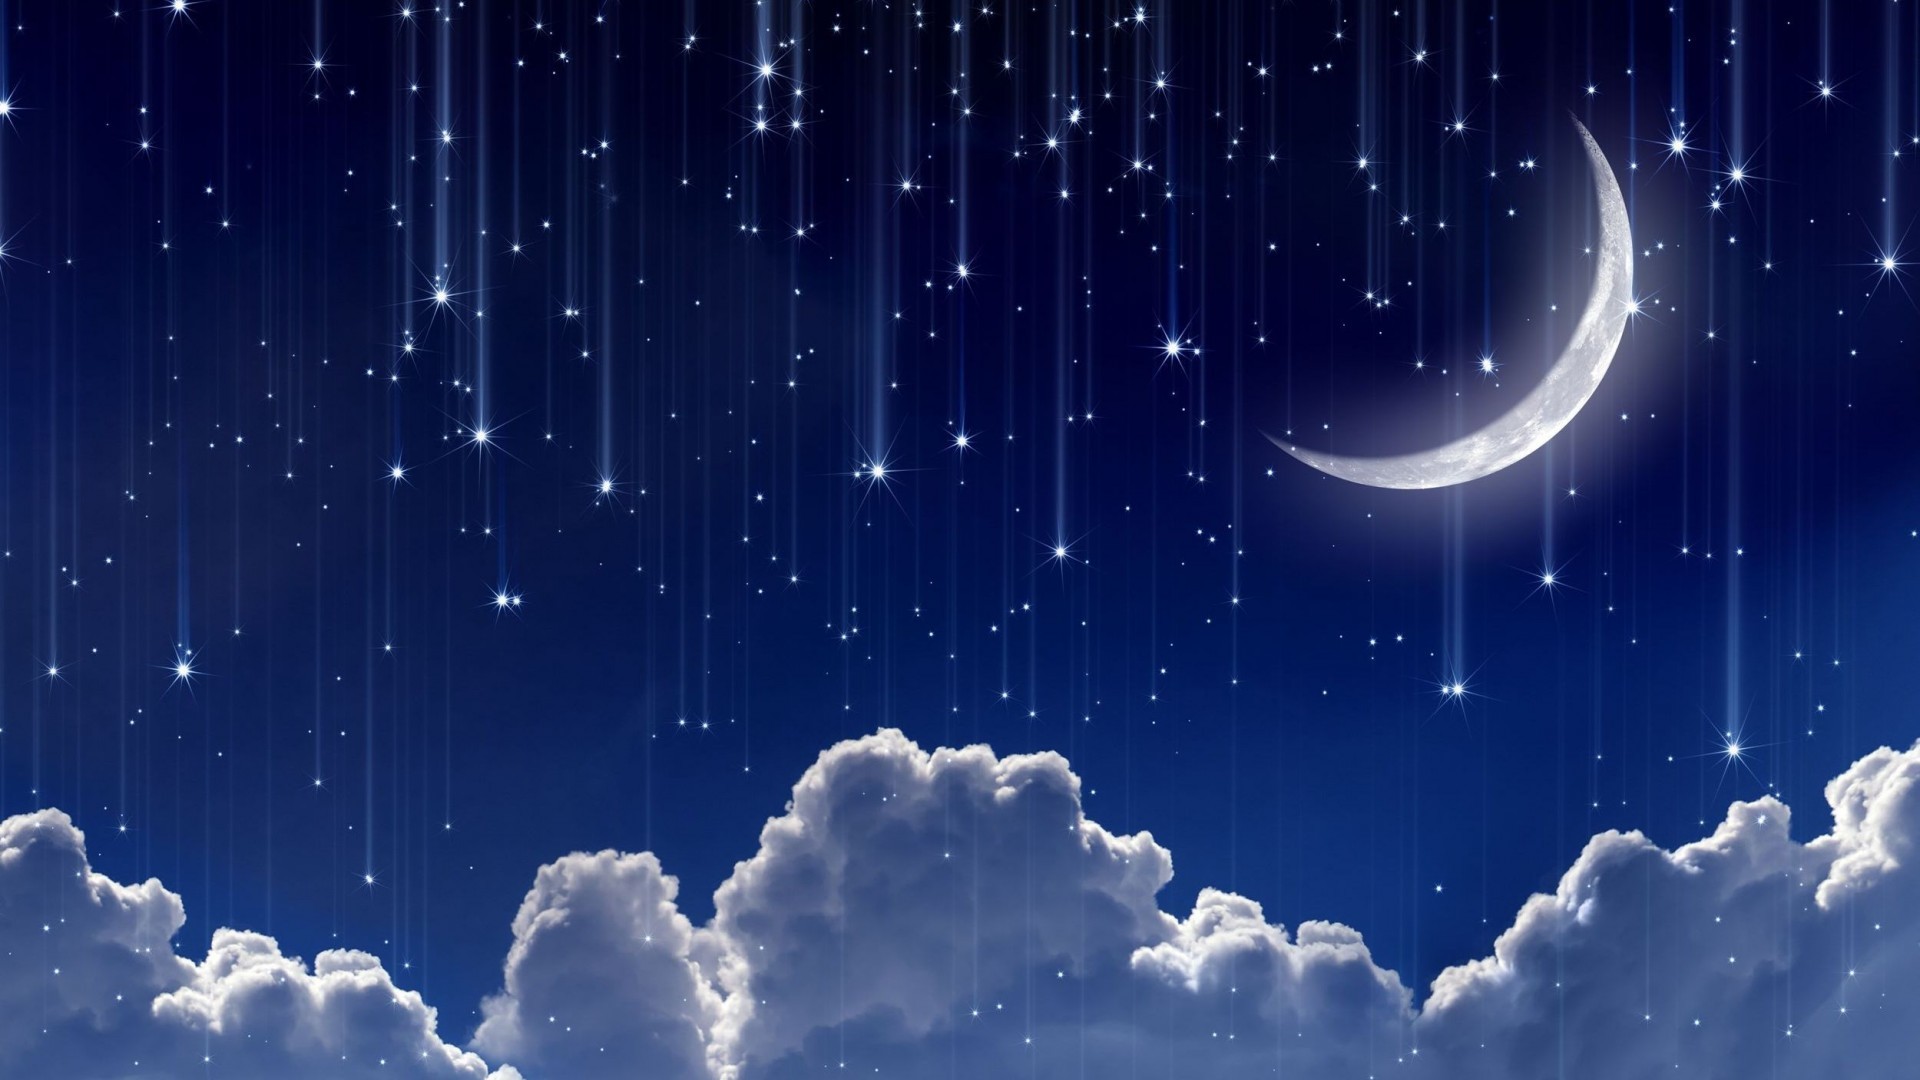 1920x1080 ... download wallpaper moon stars night starfall crescent  ...